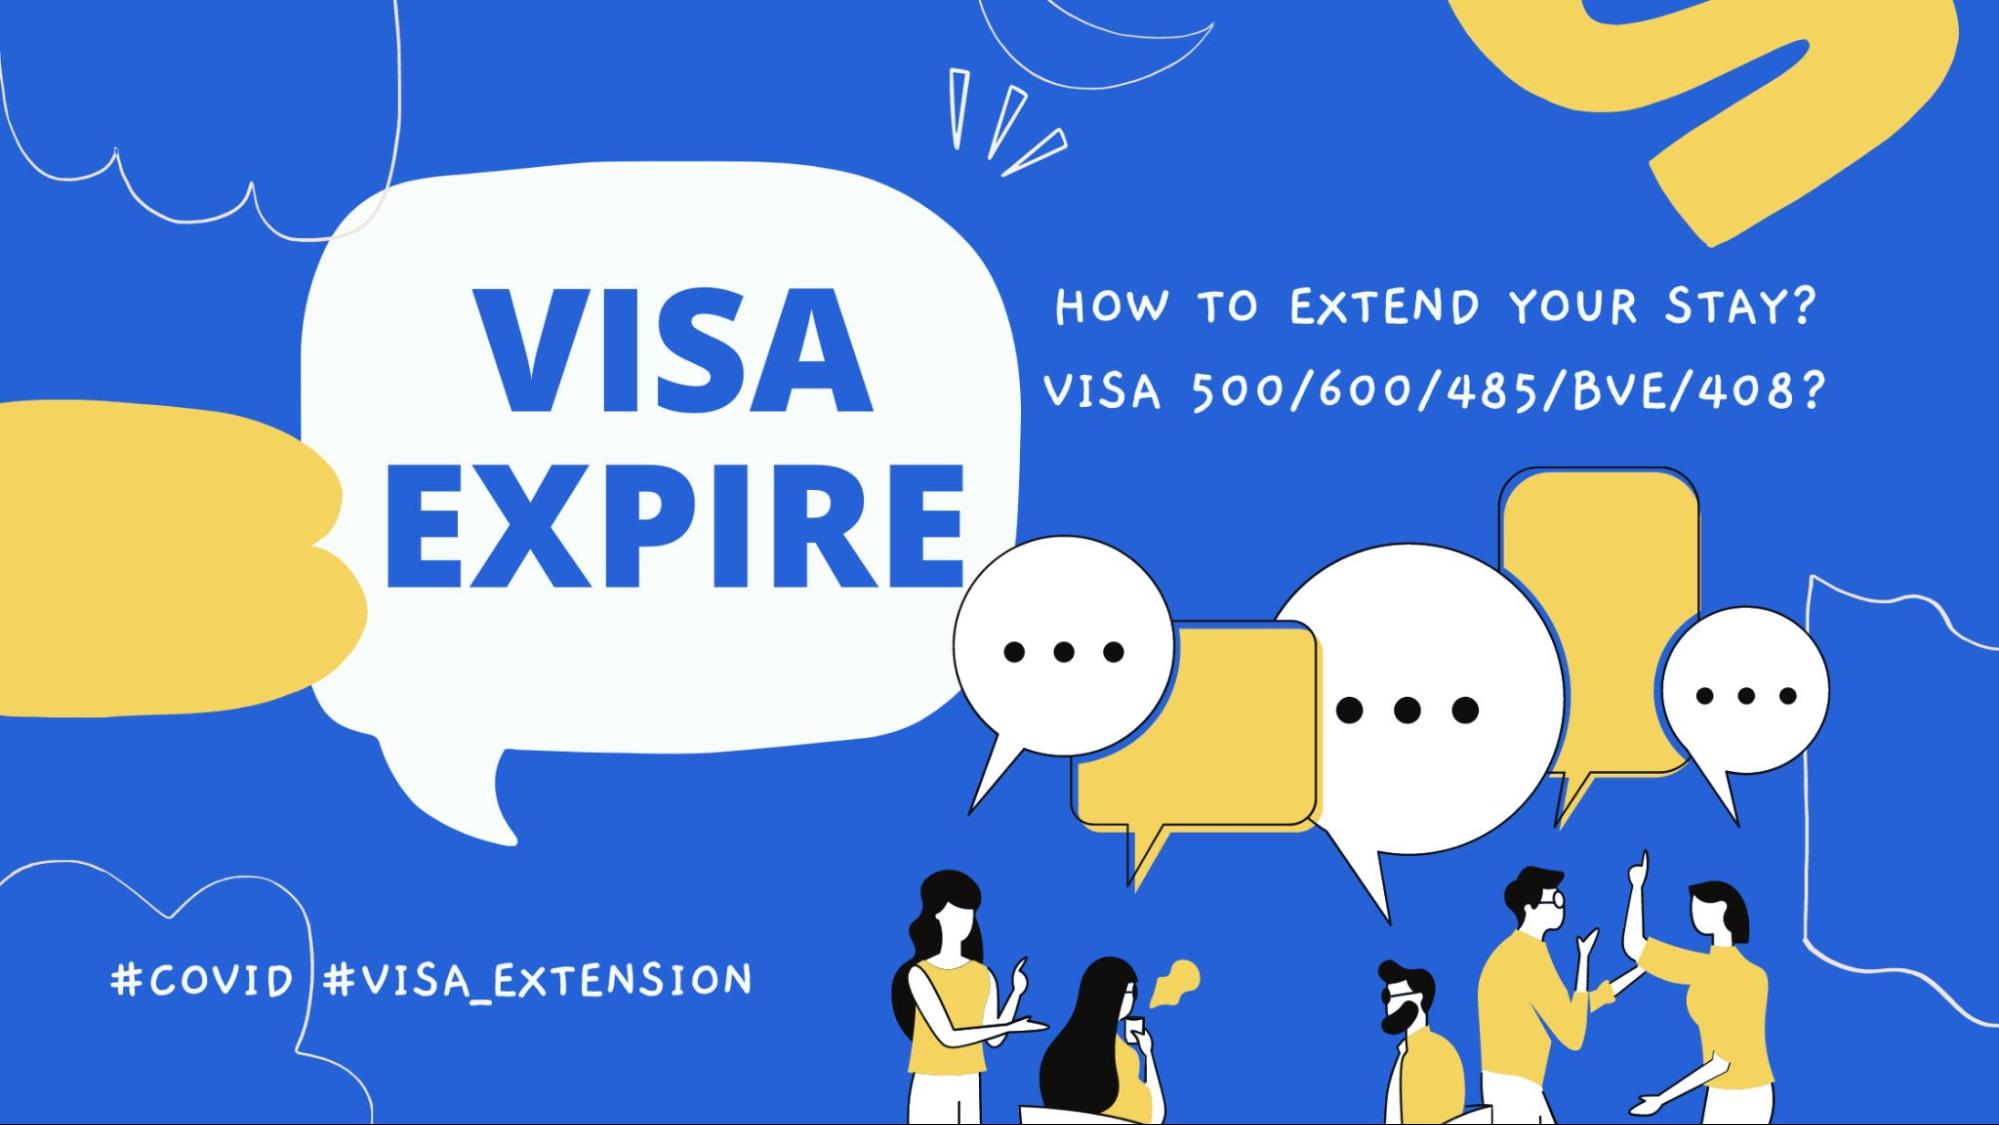 Chi phí xin visa 500 Úc là bao nhiêu?